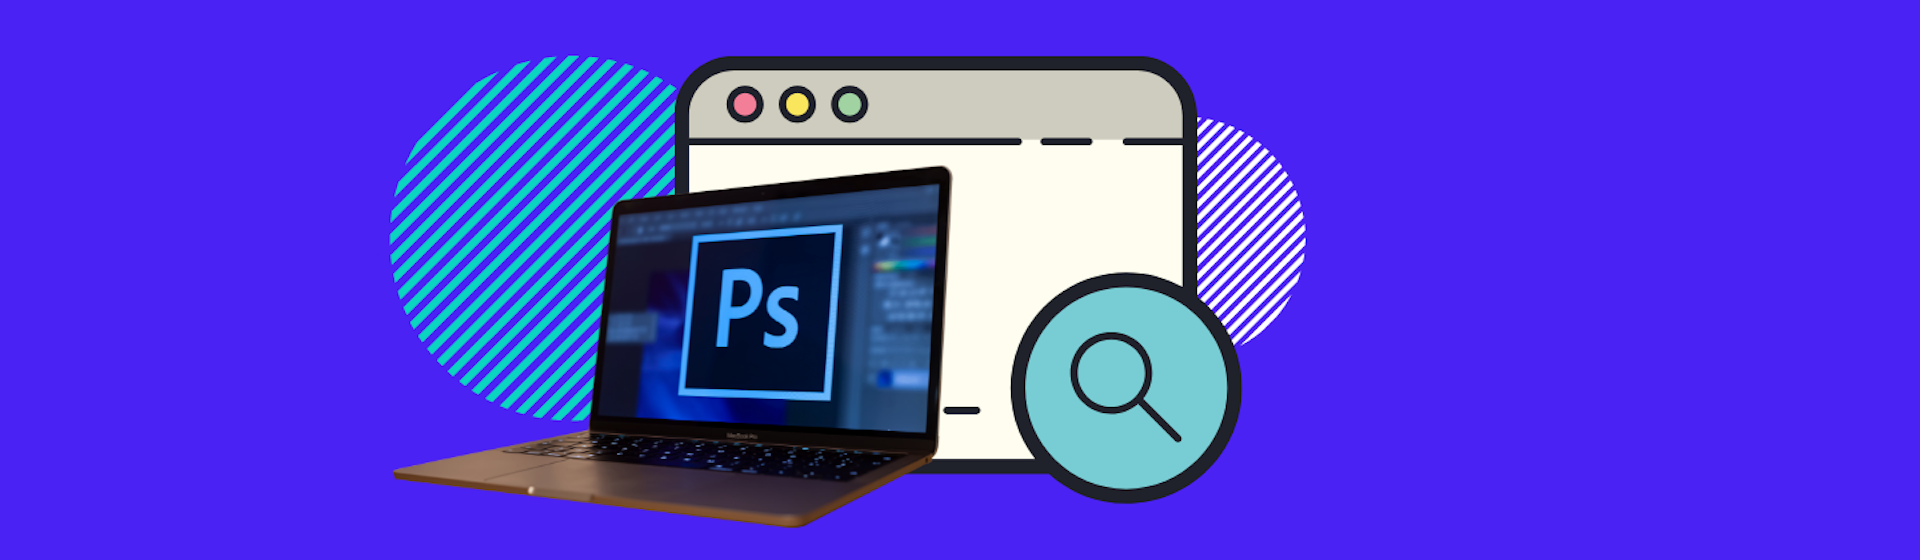 ¿Cómo crear un archivo .ico en Photoshop? ¡Crea un Favicon para tu página!